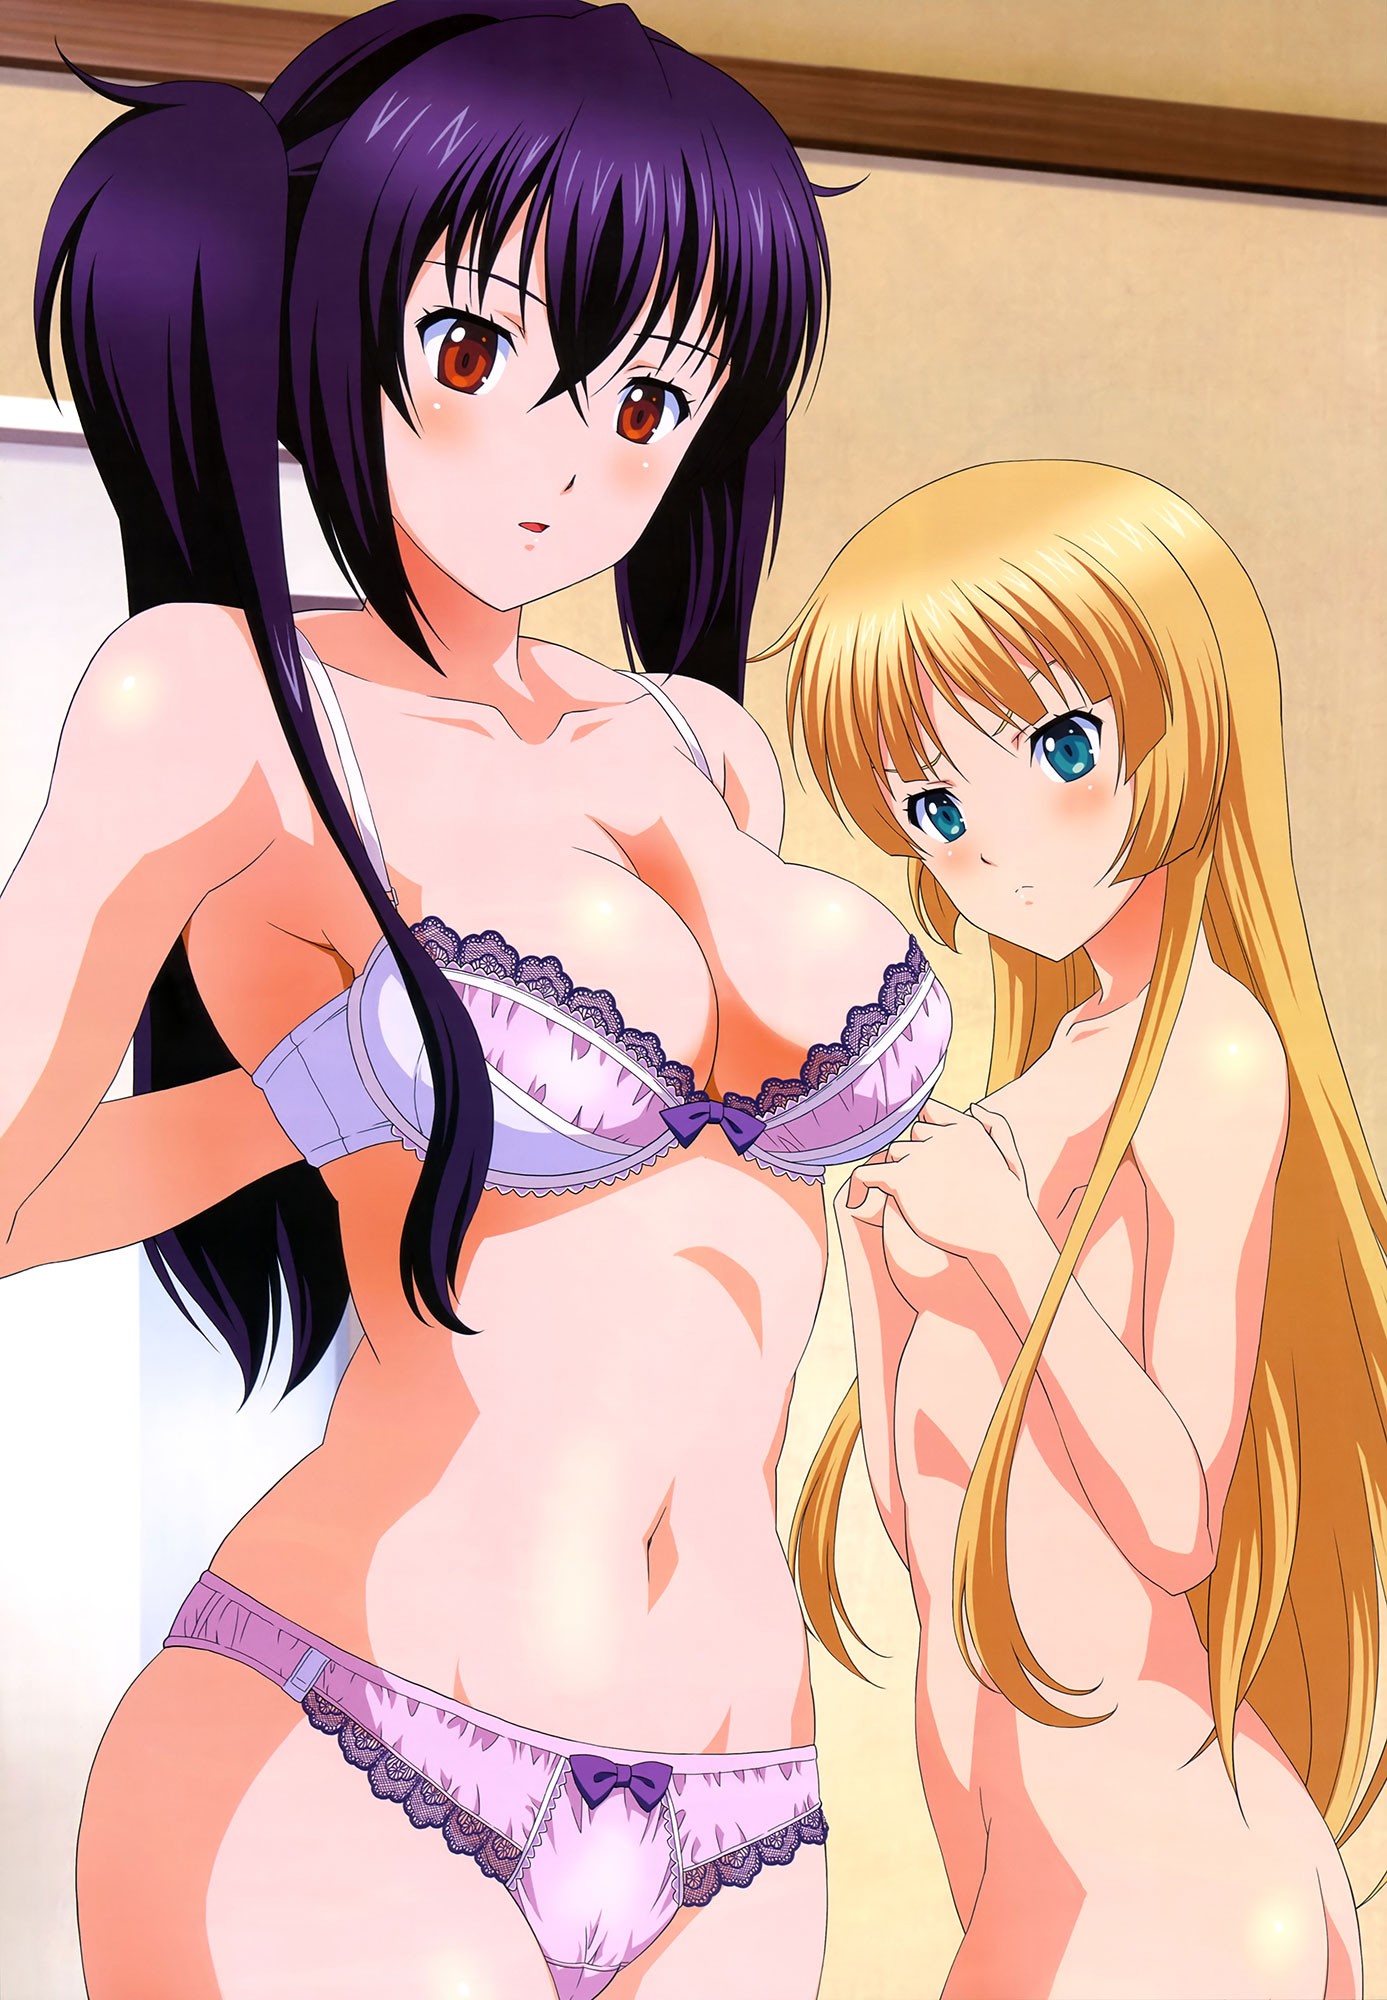 Anime 1387x2000 Isuka Shimazu Sakuya Shimazu Suseri anime anime girls boobs purple hair red eyes bra belly panties lingerie blonde aqua eyes two women